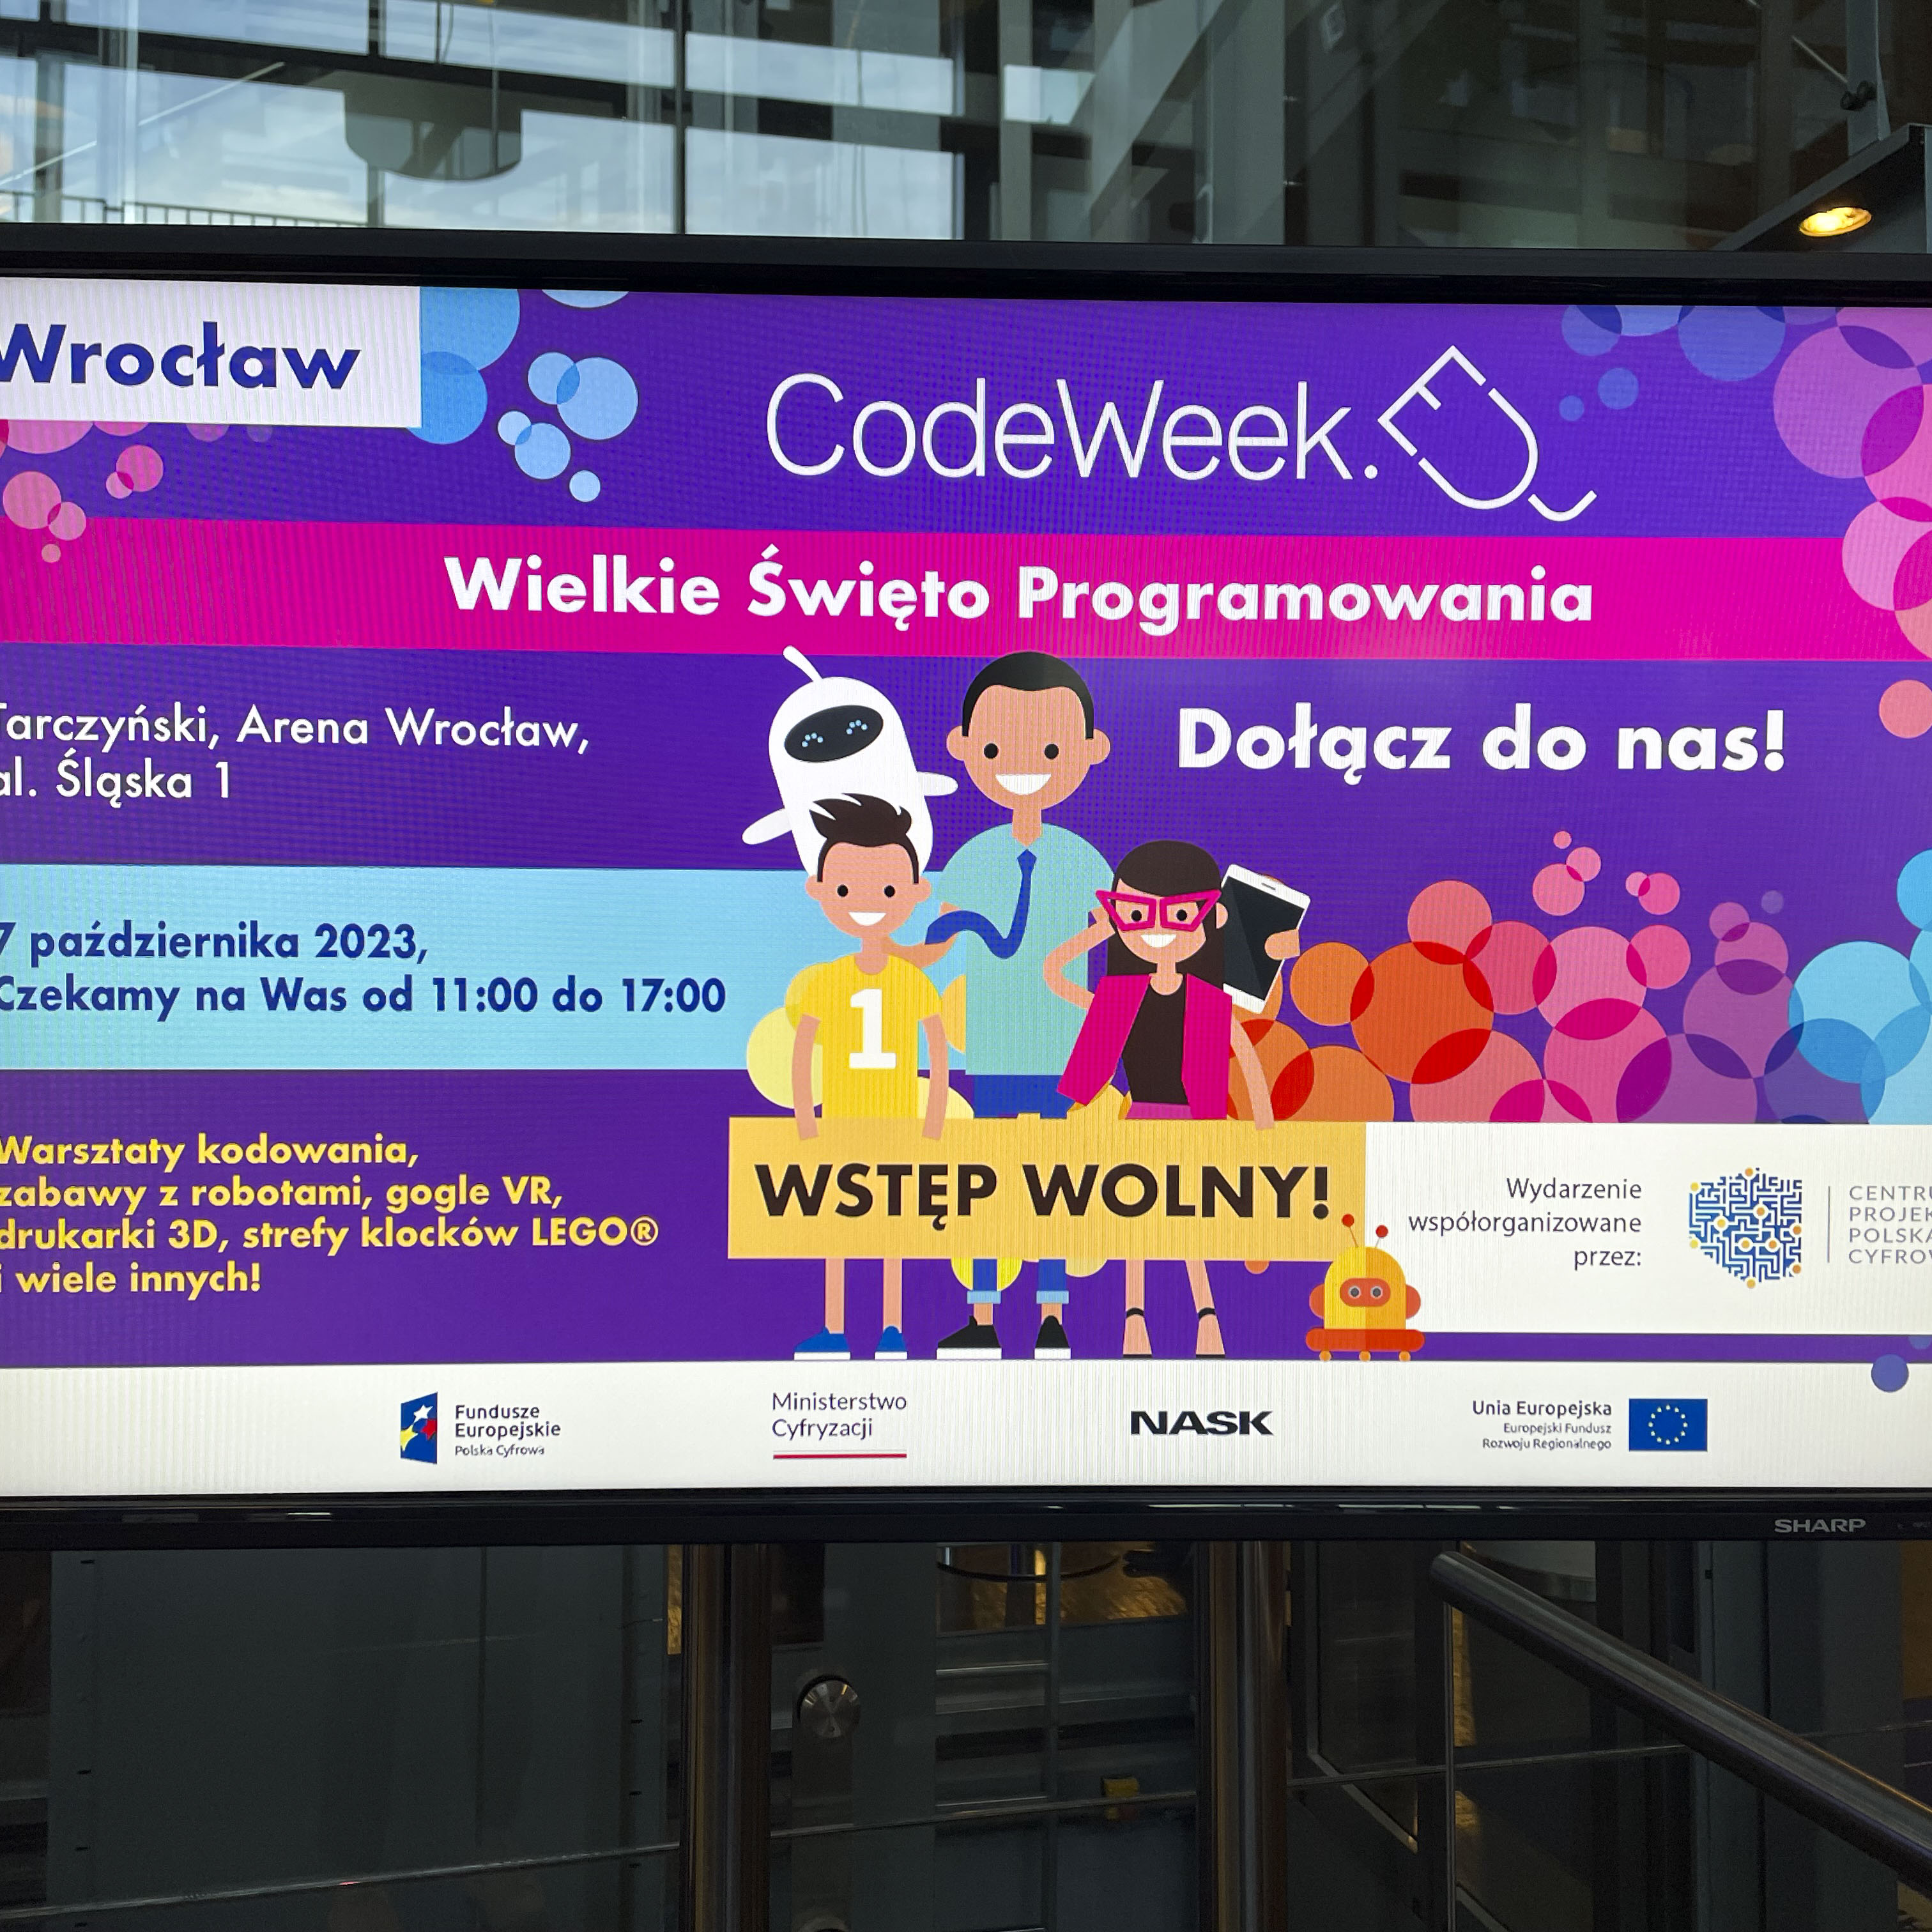 Ekran informacyjny, Codeweek wielkie święto programowania